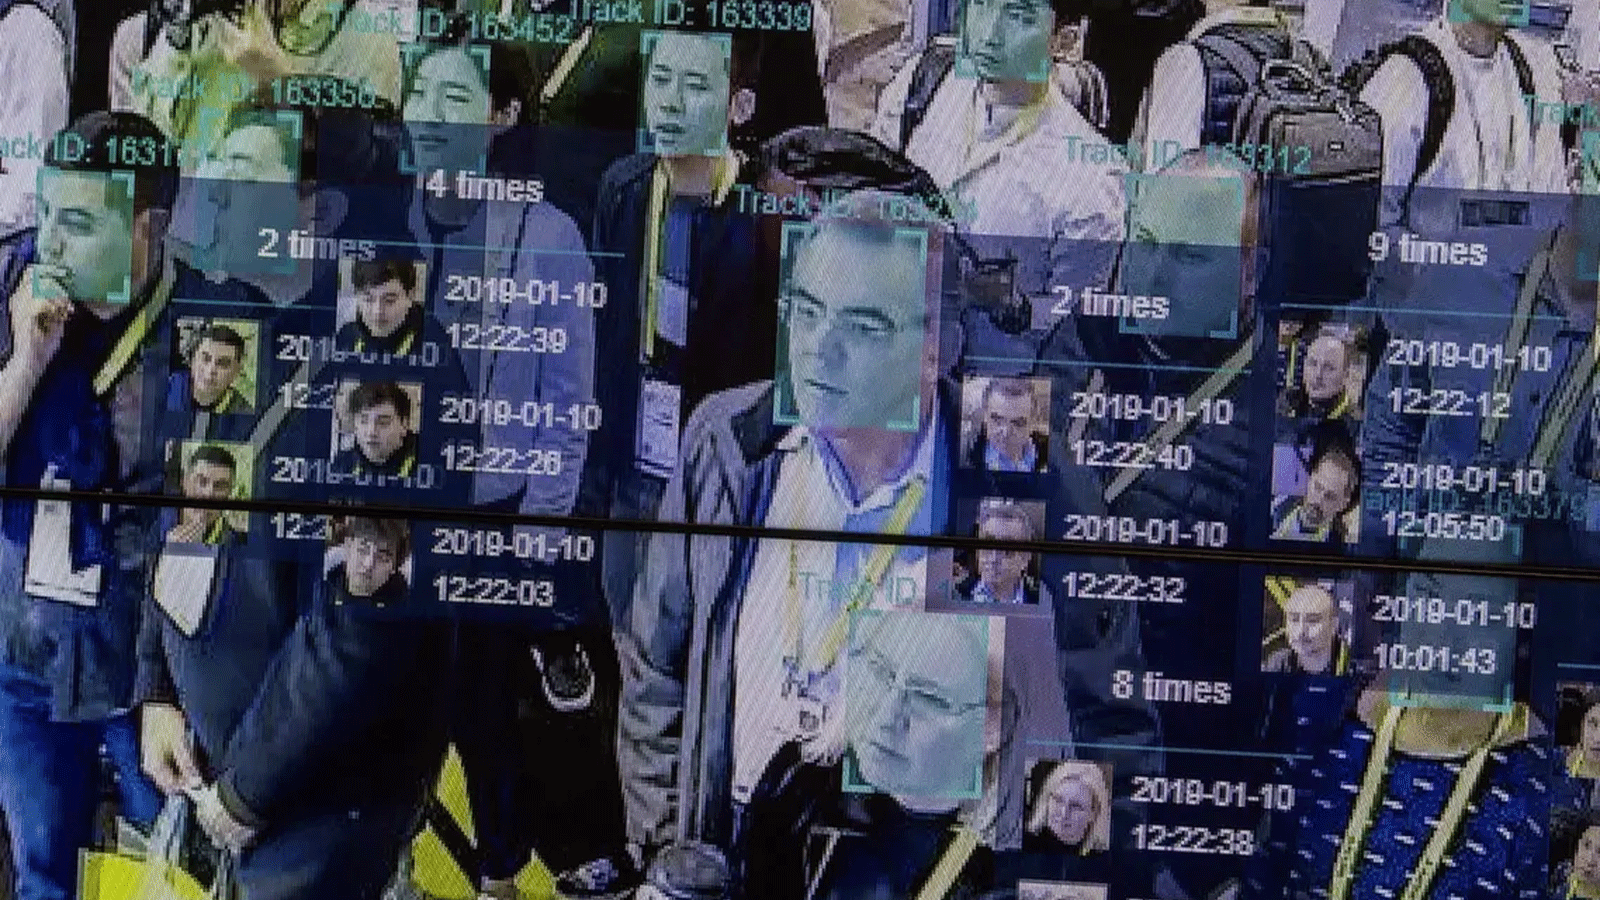  العرض التوضيحي المباشر للذكاء الاصطناعي والتعرف على الوجه في تقنية الحشد المكاني والزماني الكثيف في معرض Horizon Robotics في مركز مؤتمرات لاس فيغاس خلال CES 2019 